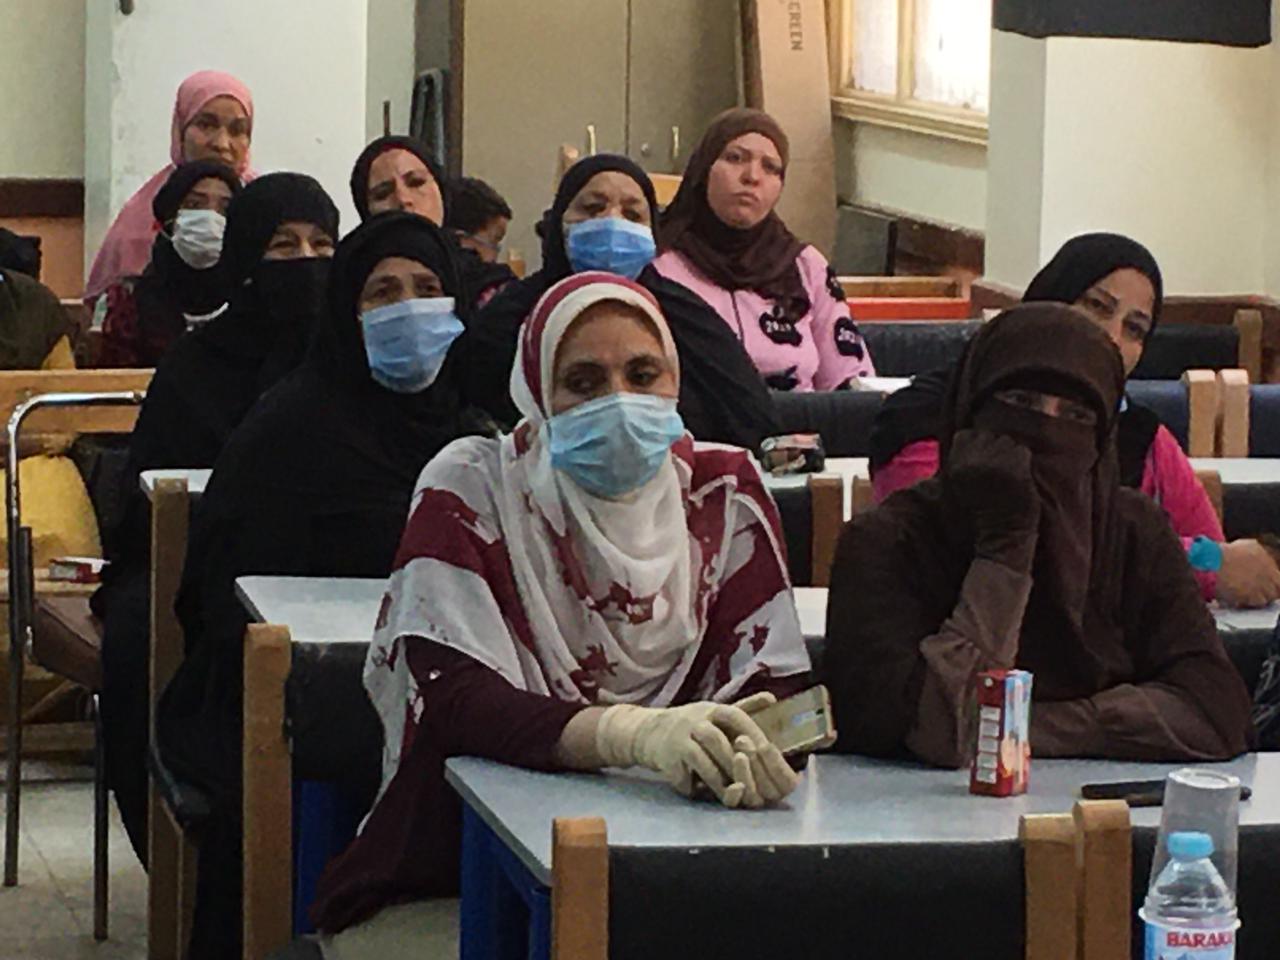 قومى المرأة بسوهاج يطلق حملة "احميها من الختان" بقرى المحافظة 5